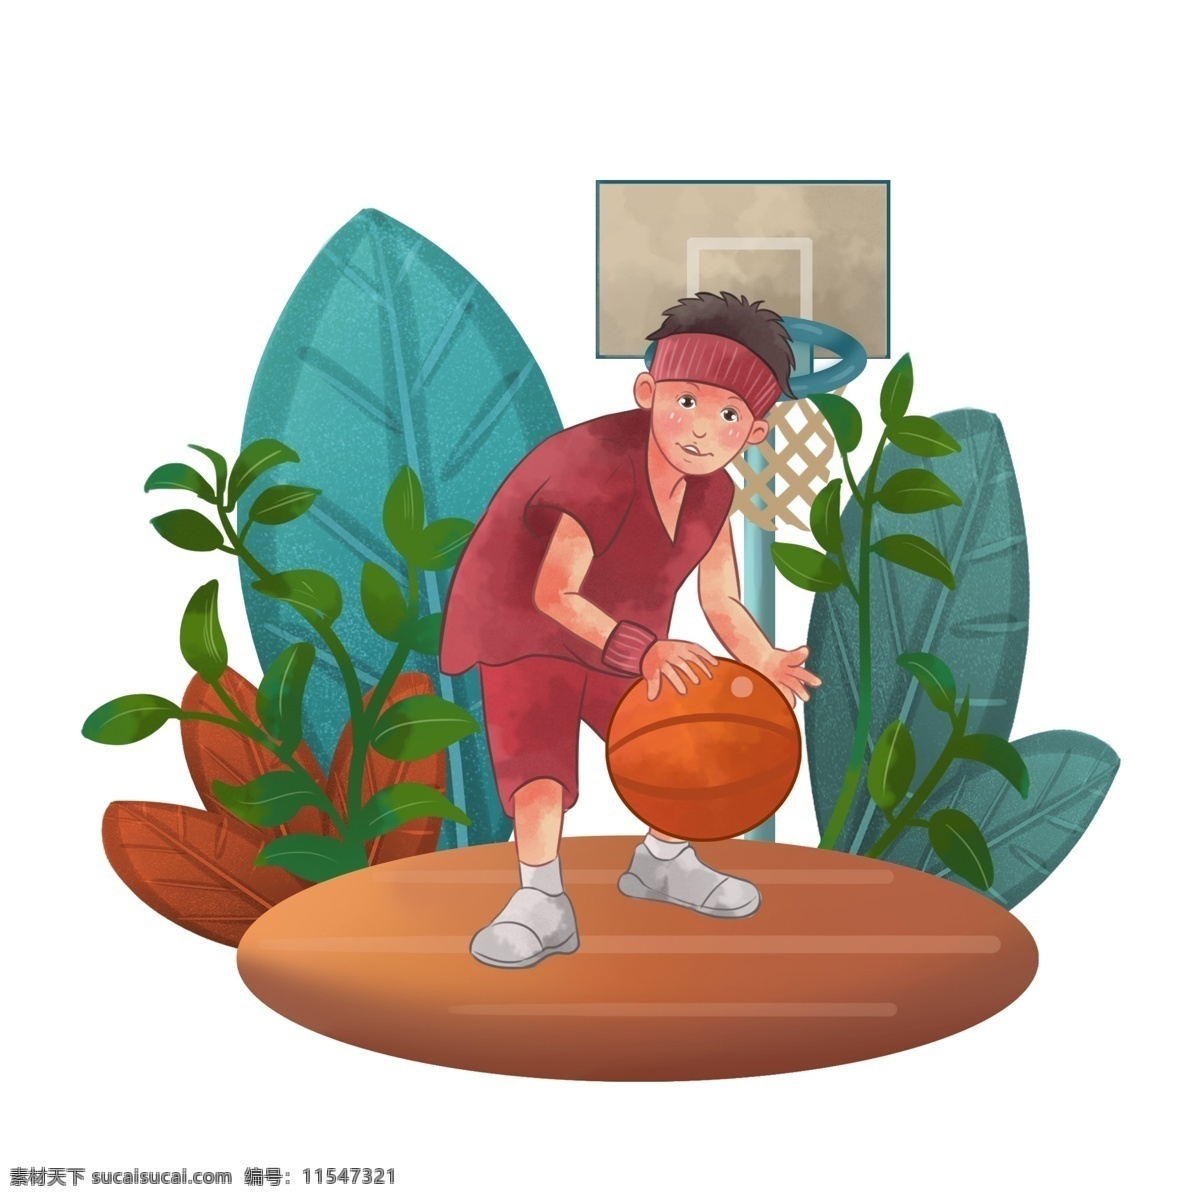 商用 手绘 儿童 篮球 形象 可商用 人物形象